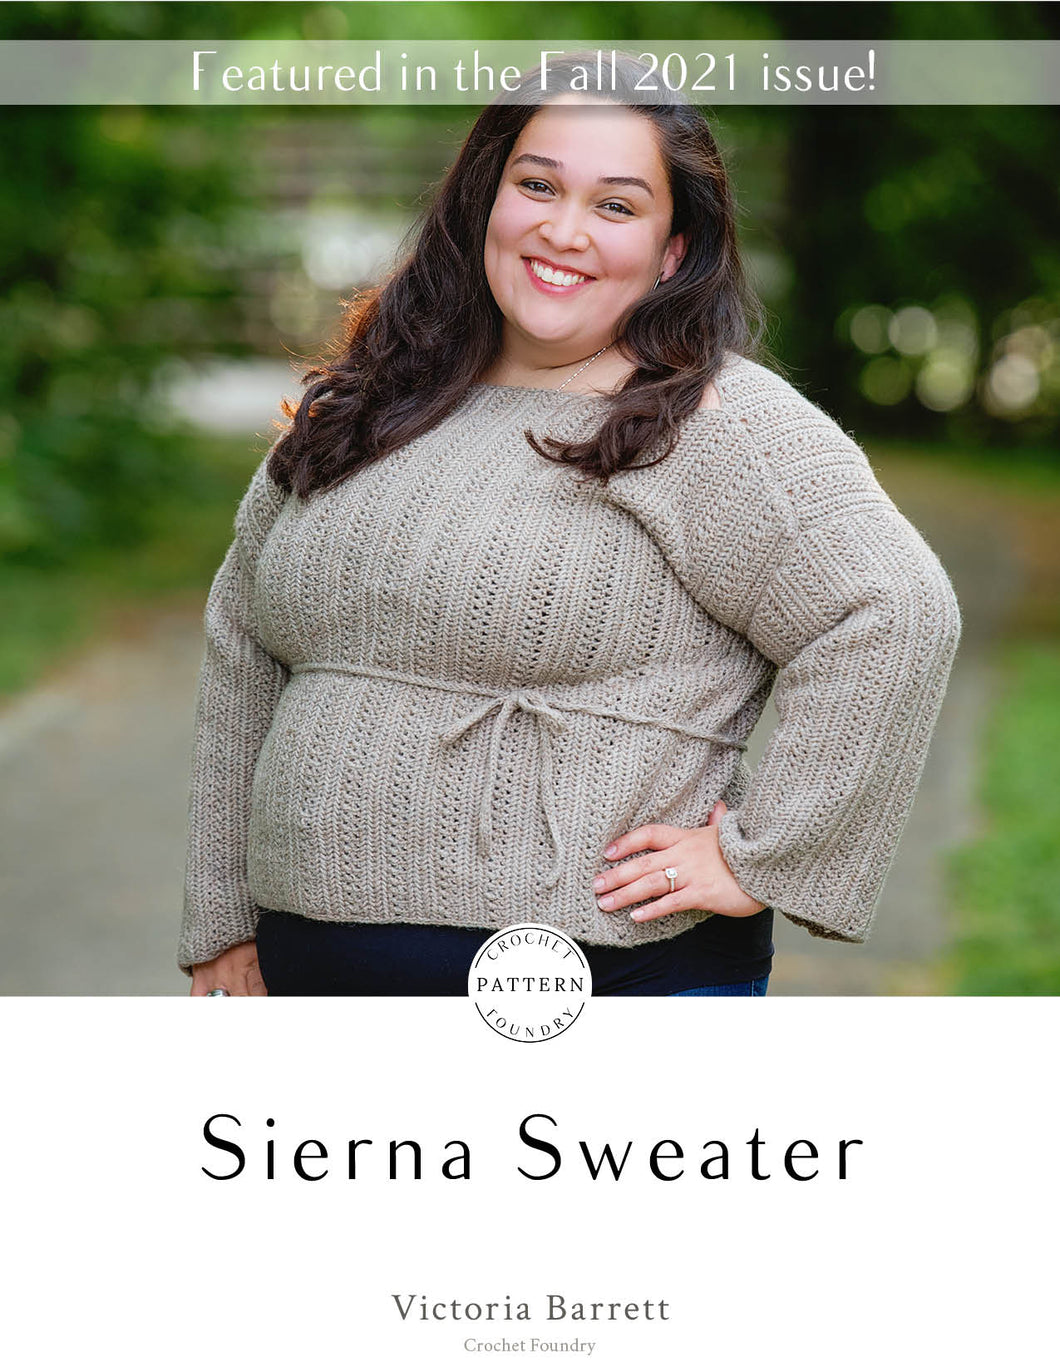 Sierna Sweater Crochet PDF Pattern by Victoria Barrett